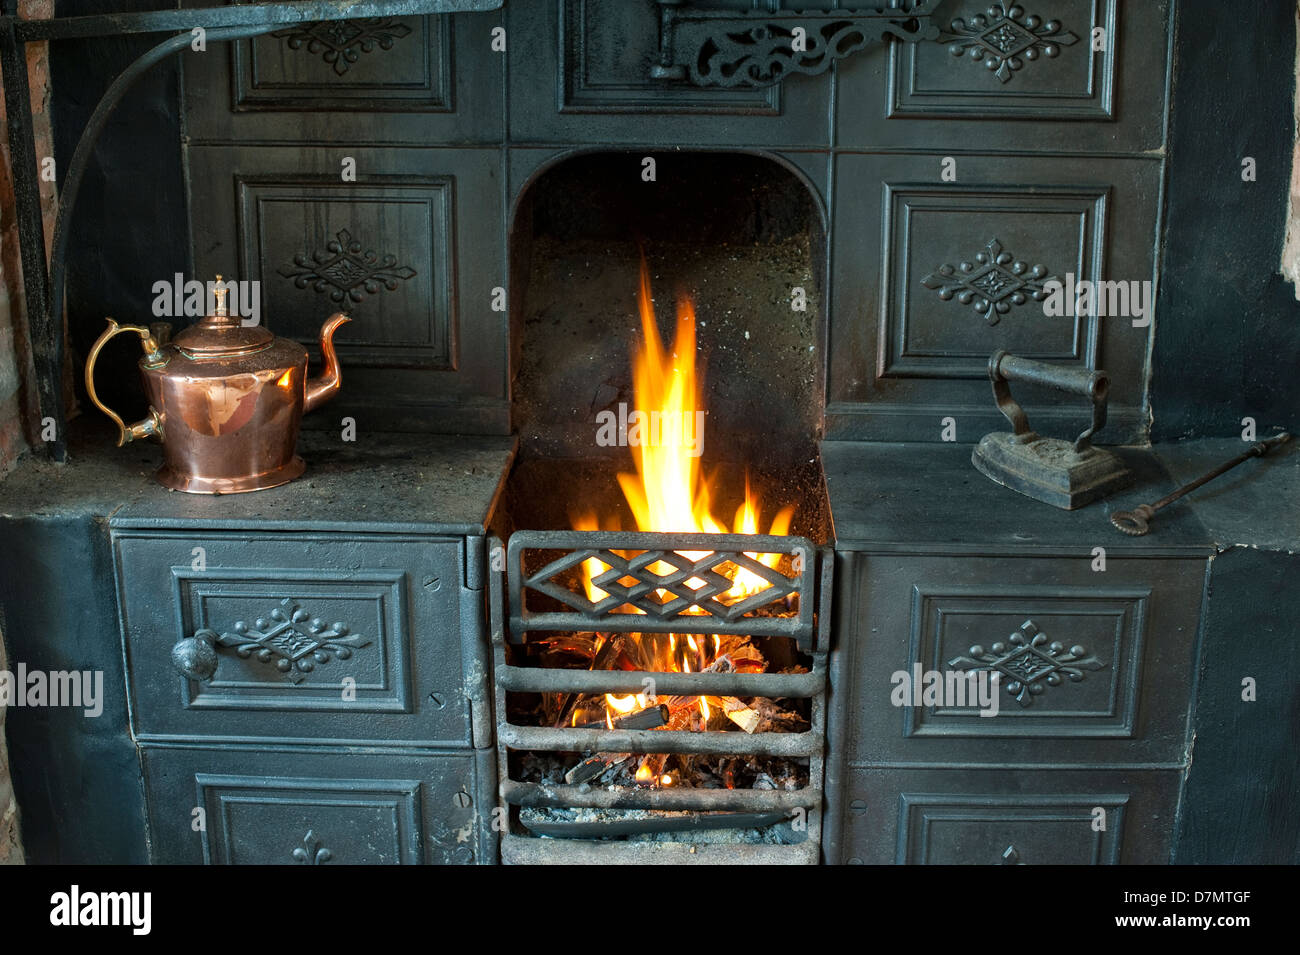 Cast iron range fireplace in a Shropshire cottage UK Stock Photo - Alamy